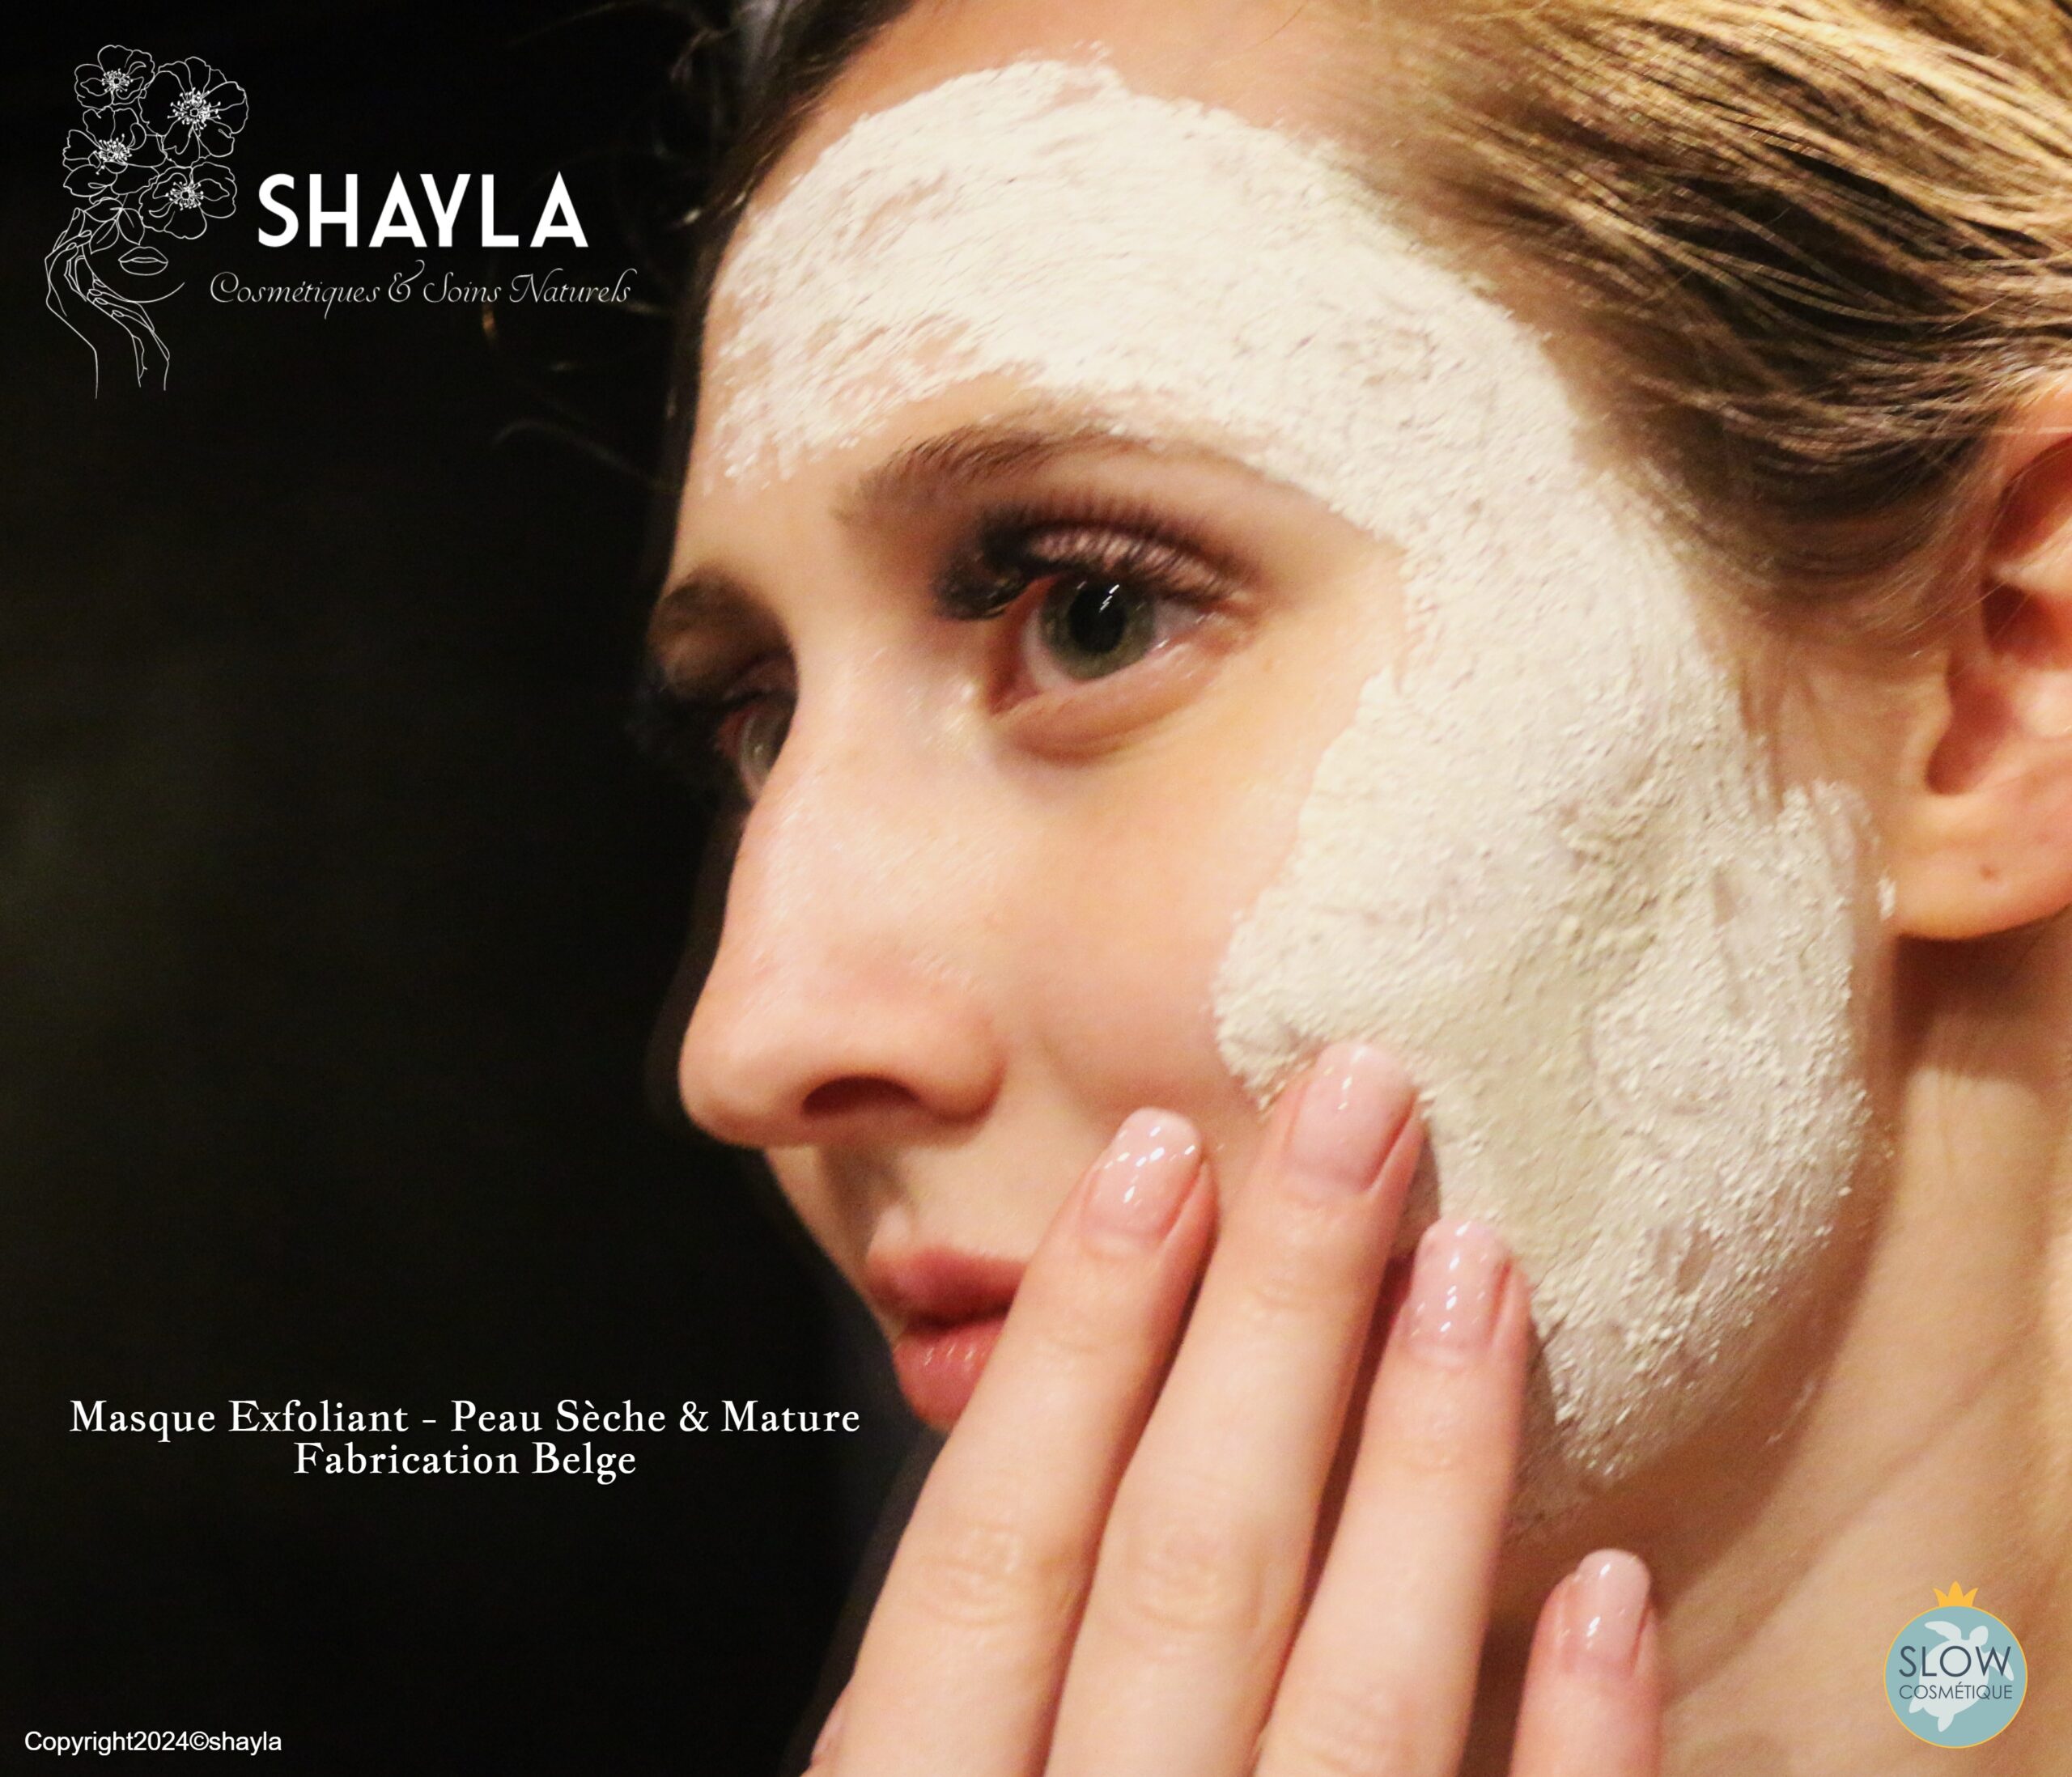 Shayla cosmetiques naturels - EXFOLIANT visage peaux matures et seches - argile blanche et graines de bambou naturelles - belge (2).JPG